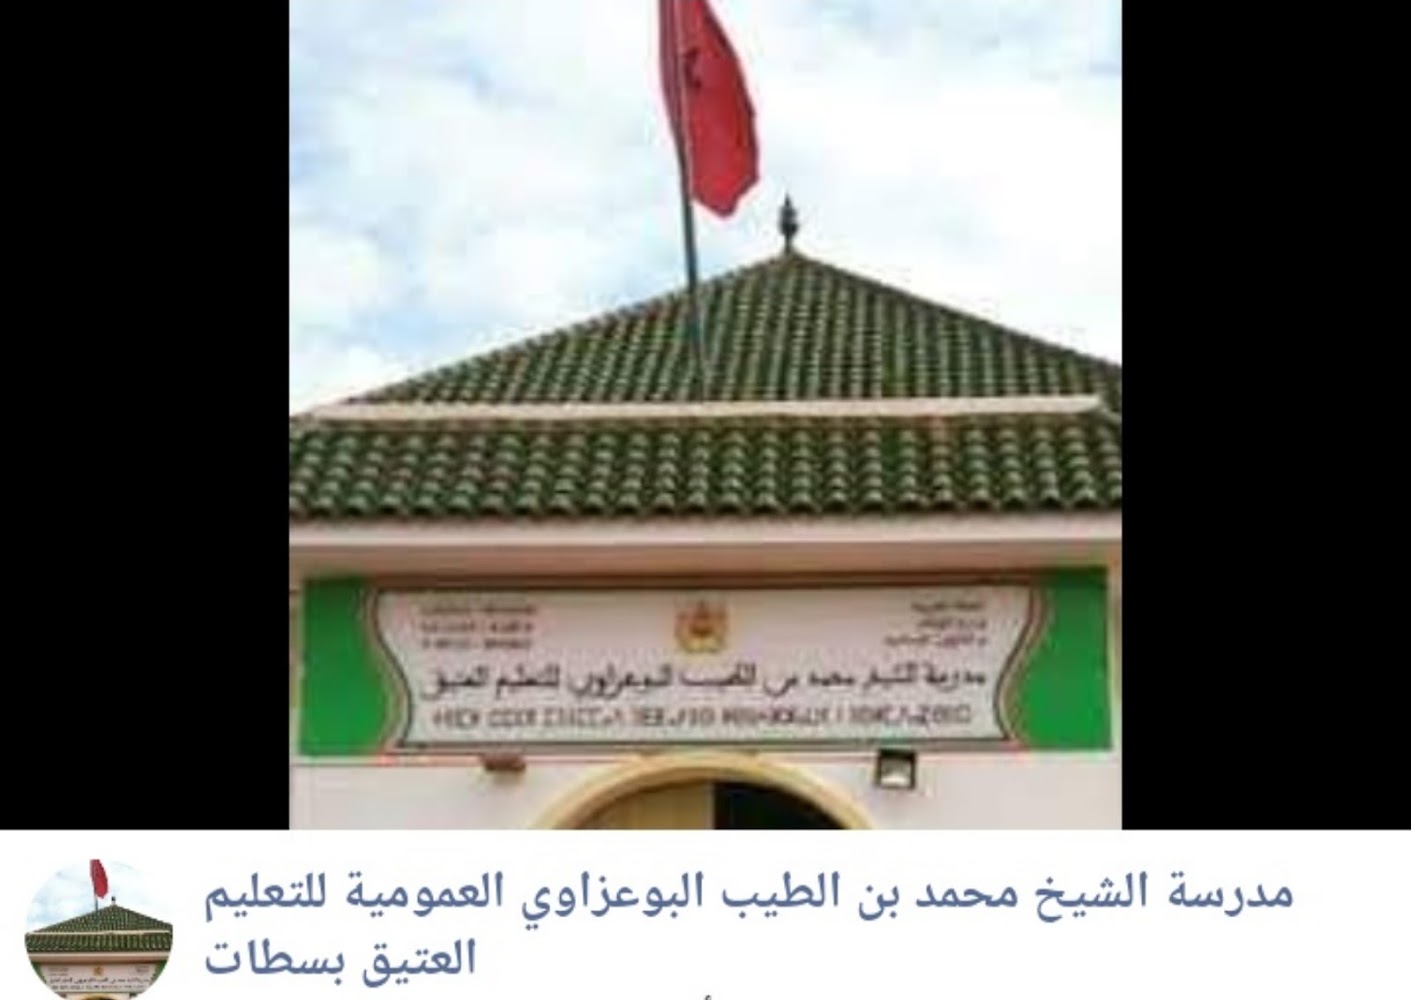 مدرسة الشيخ محمد بن الطيب البوعزاوي للتعليم العتيق سطات